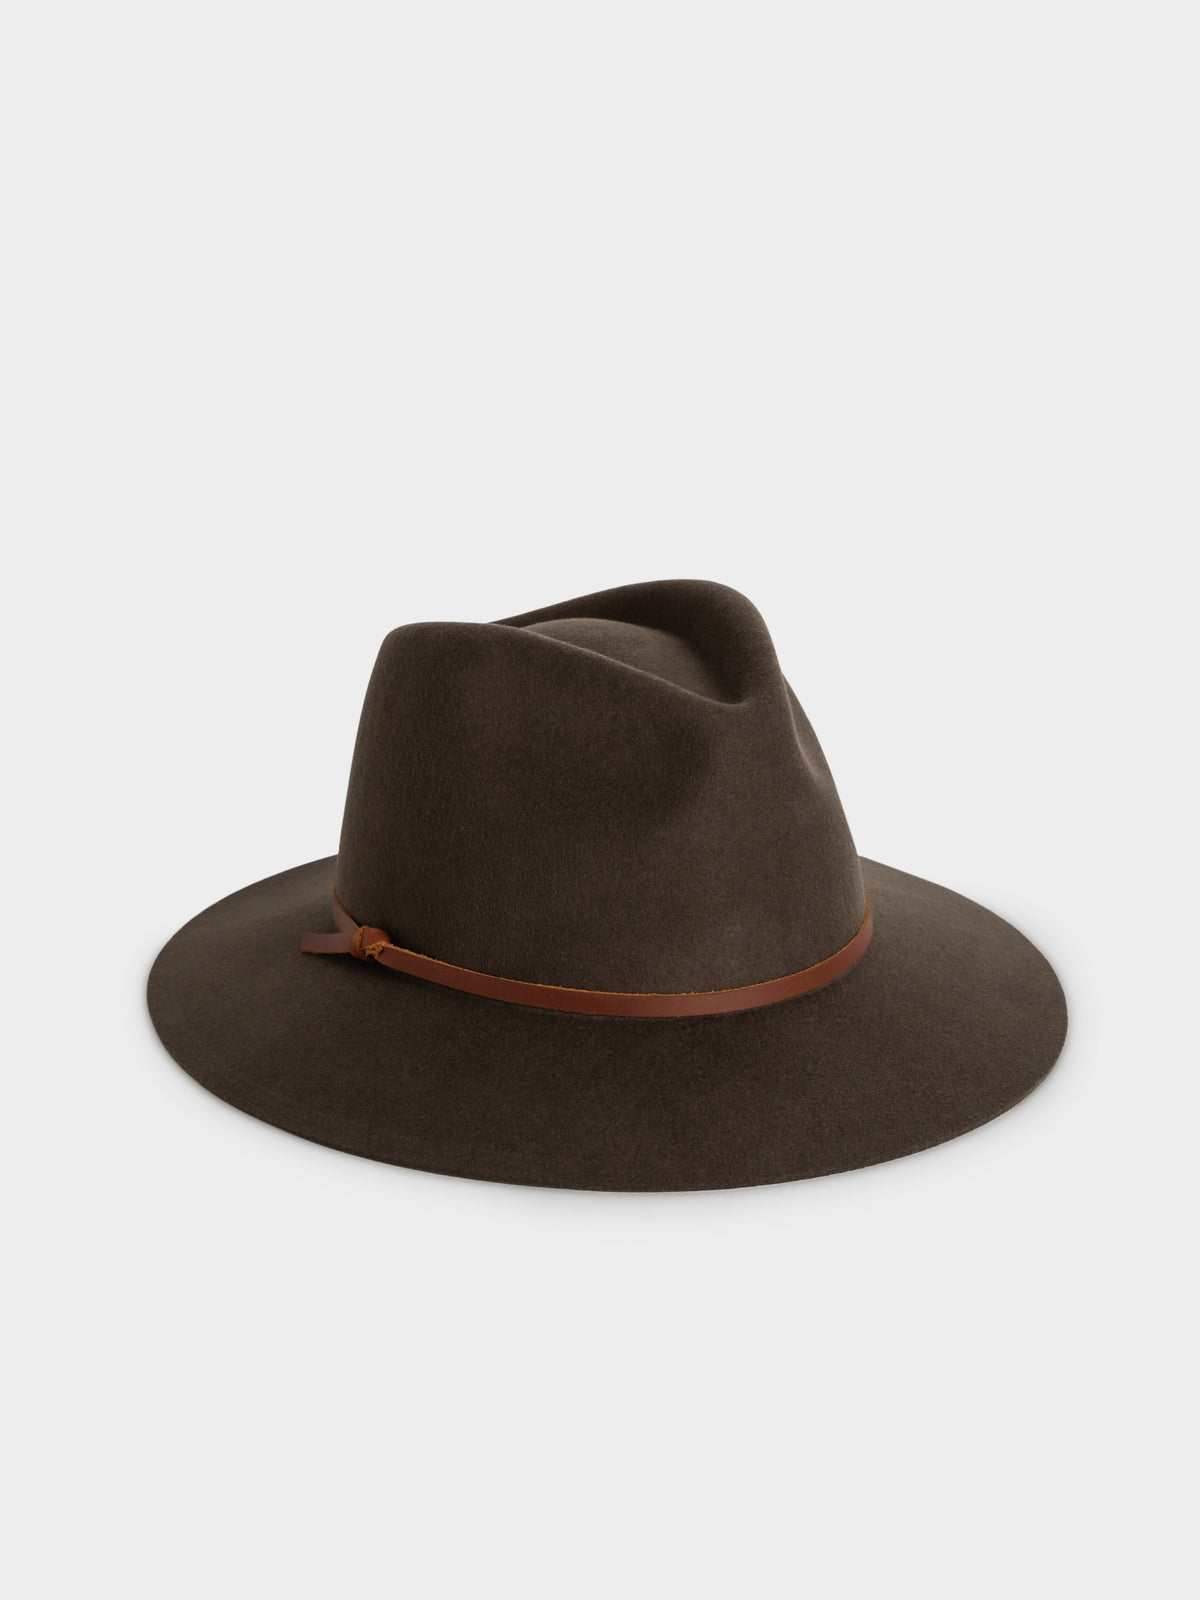 Durango Fedora Hat in Truffle